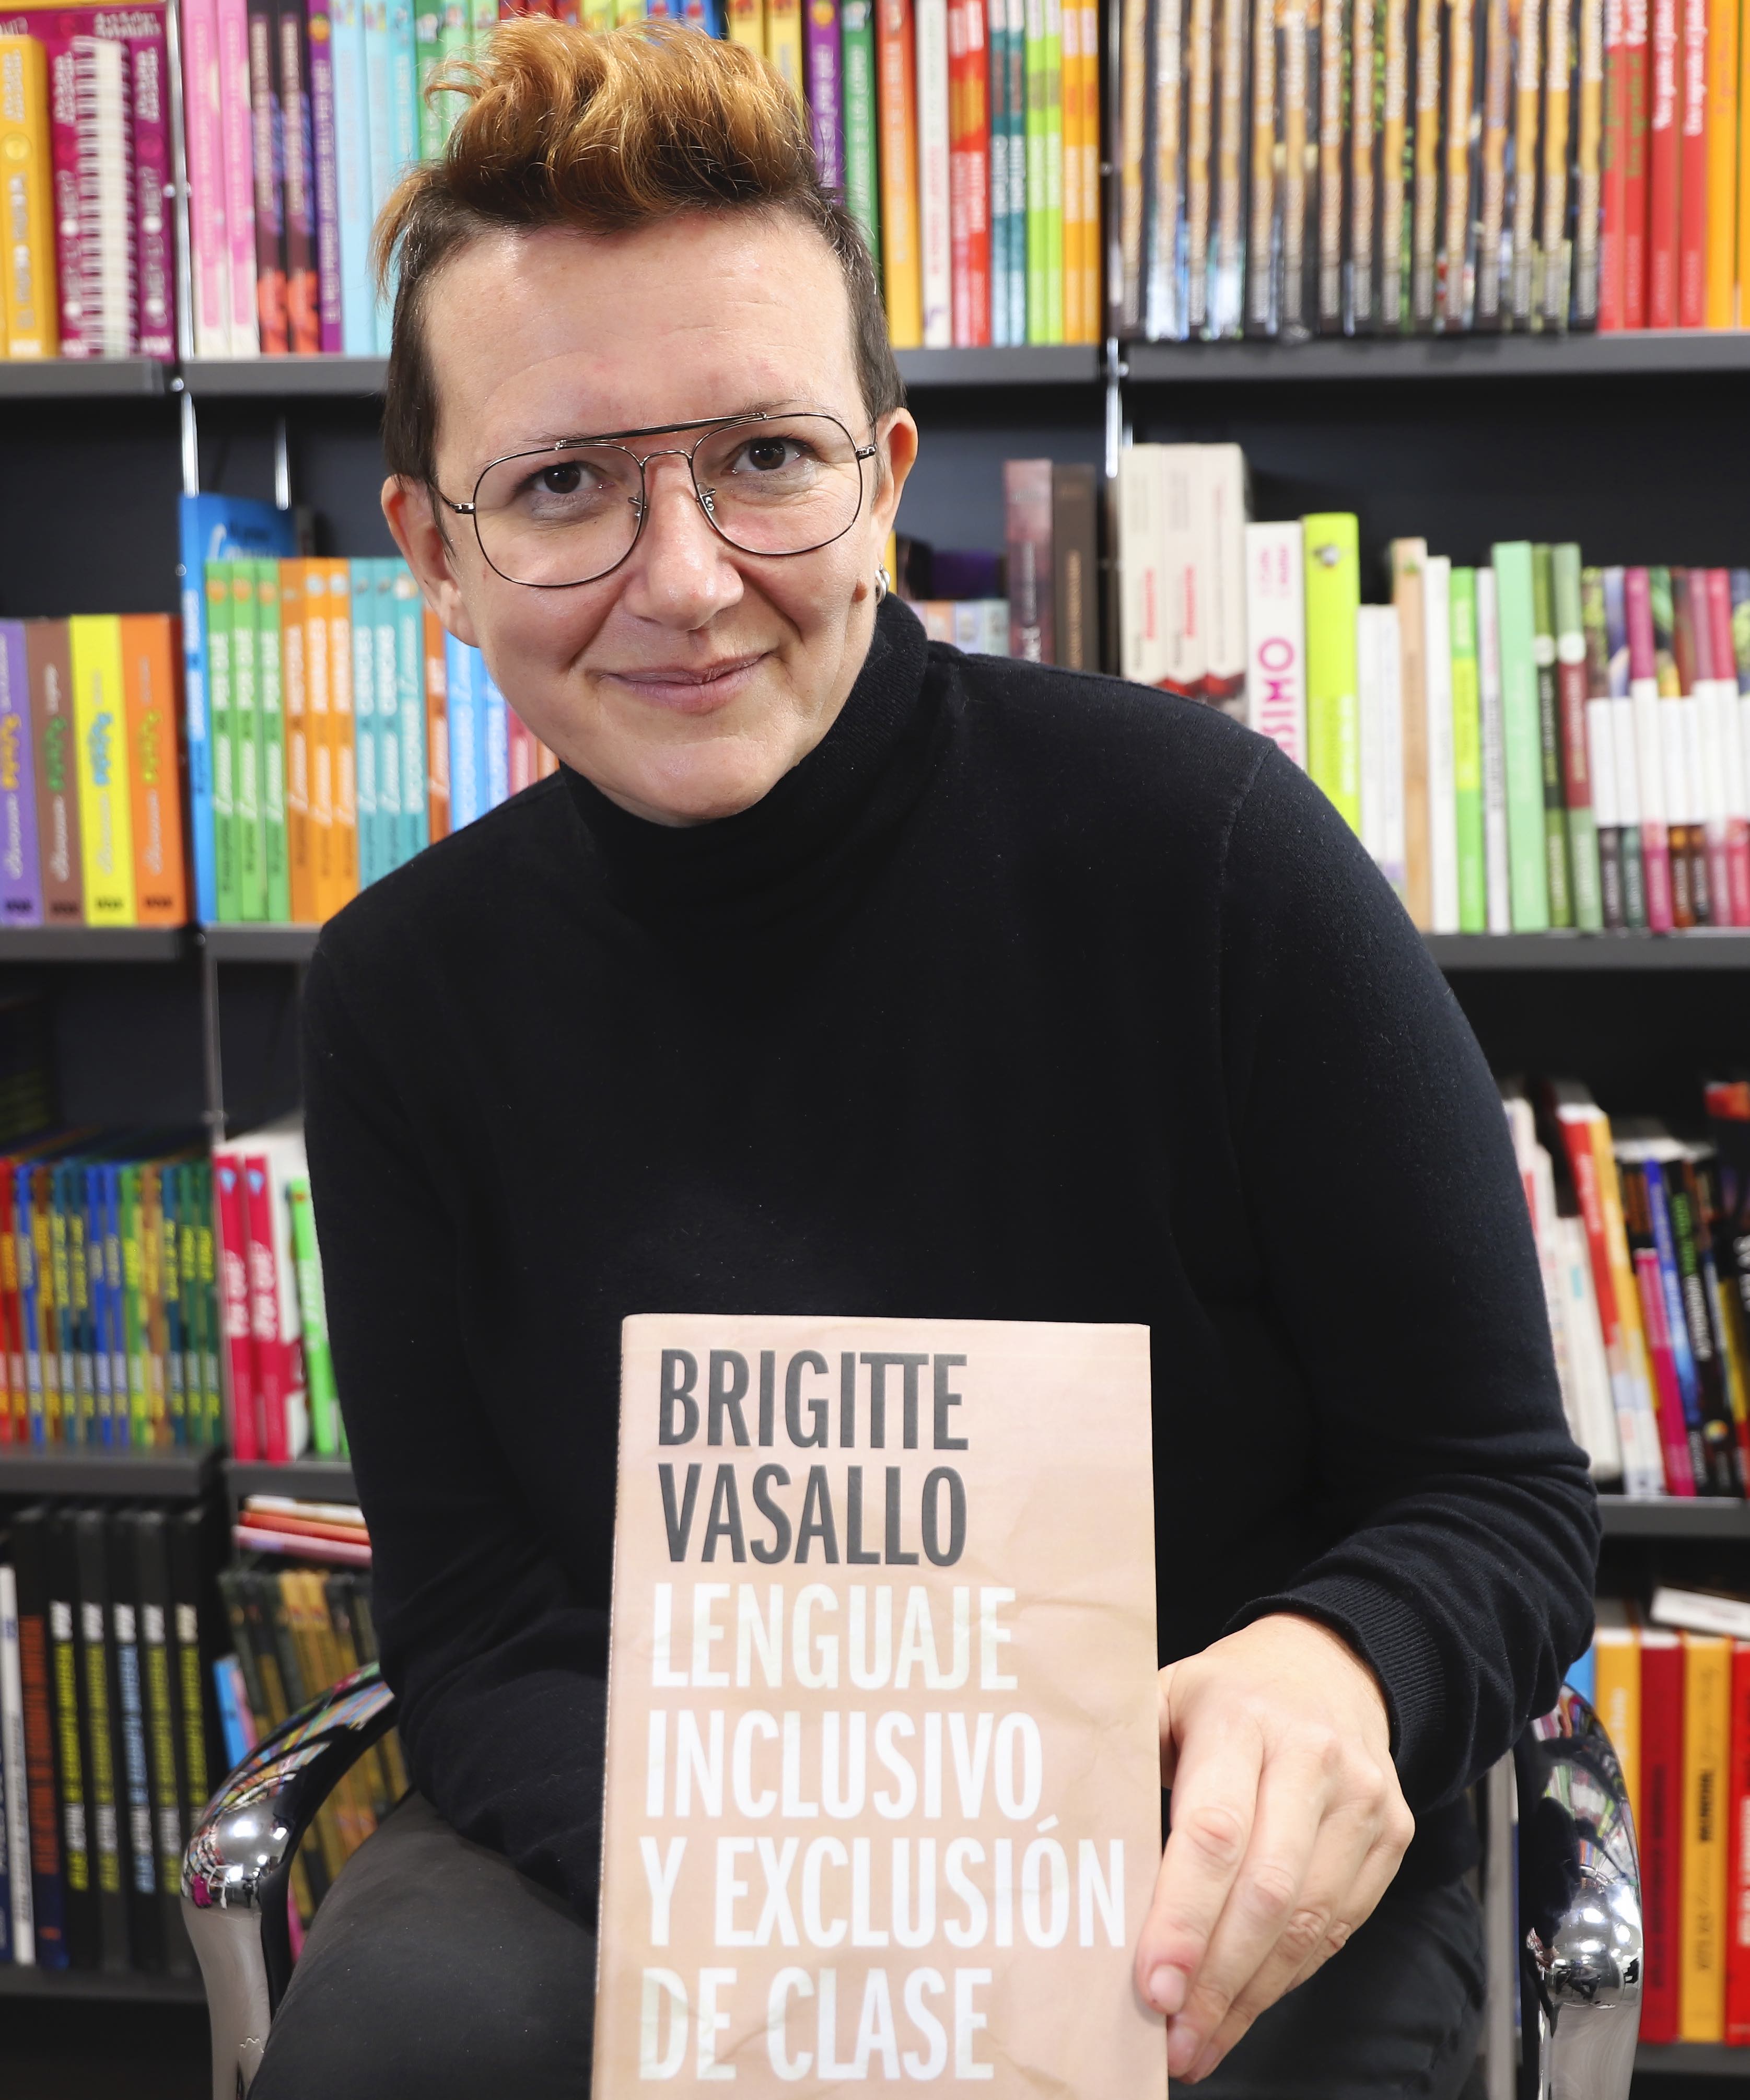 <strong>¿Qué encontraremos en el libro <em>Lenguaje inclusivo y exclusión de clase</em> de Brigitte Vasallo?</strong>